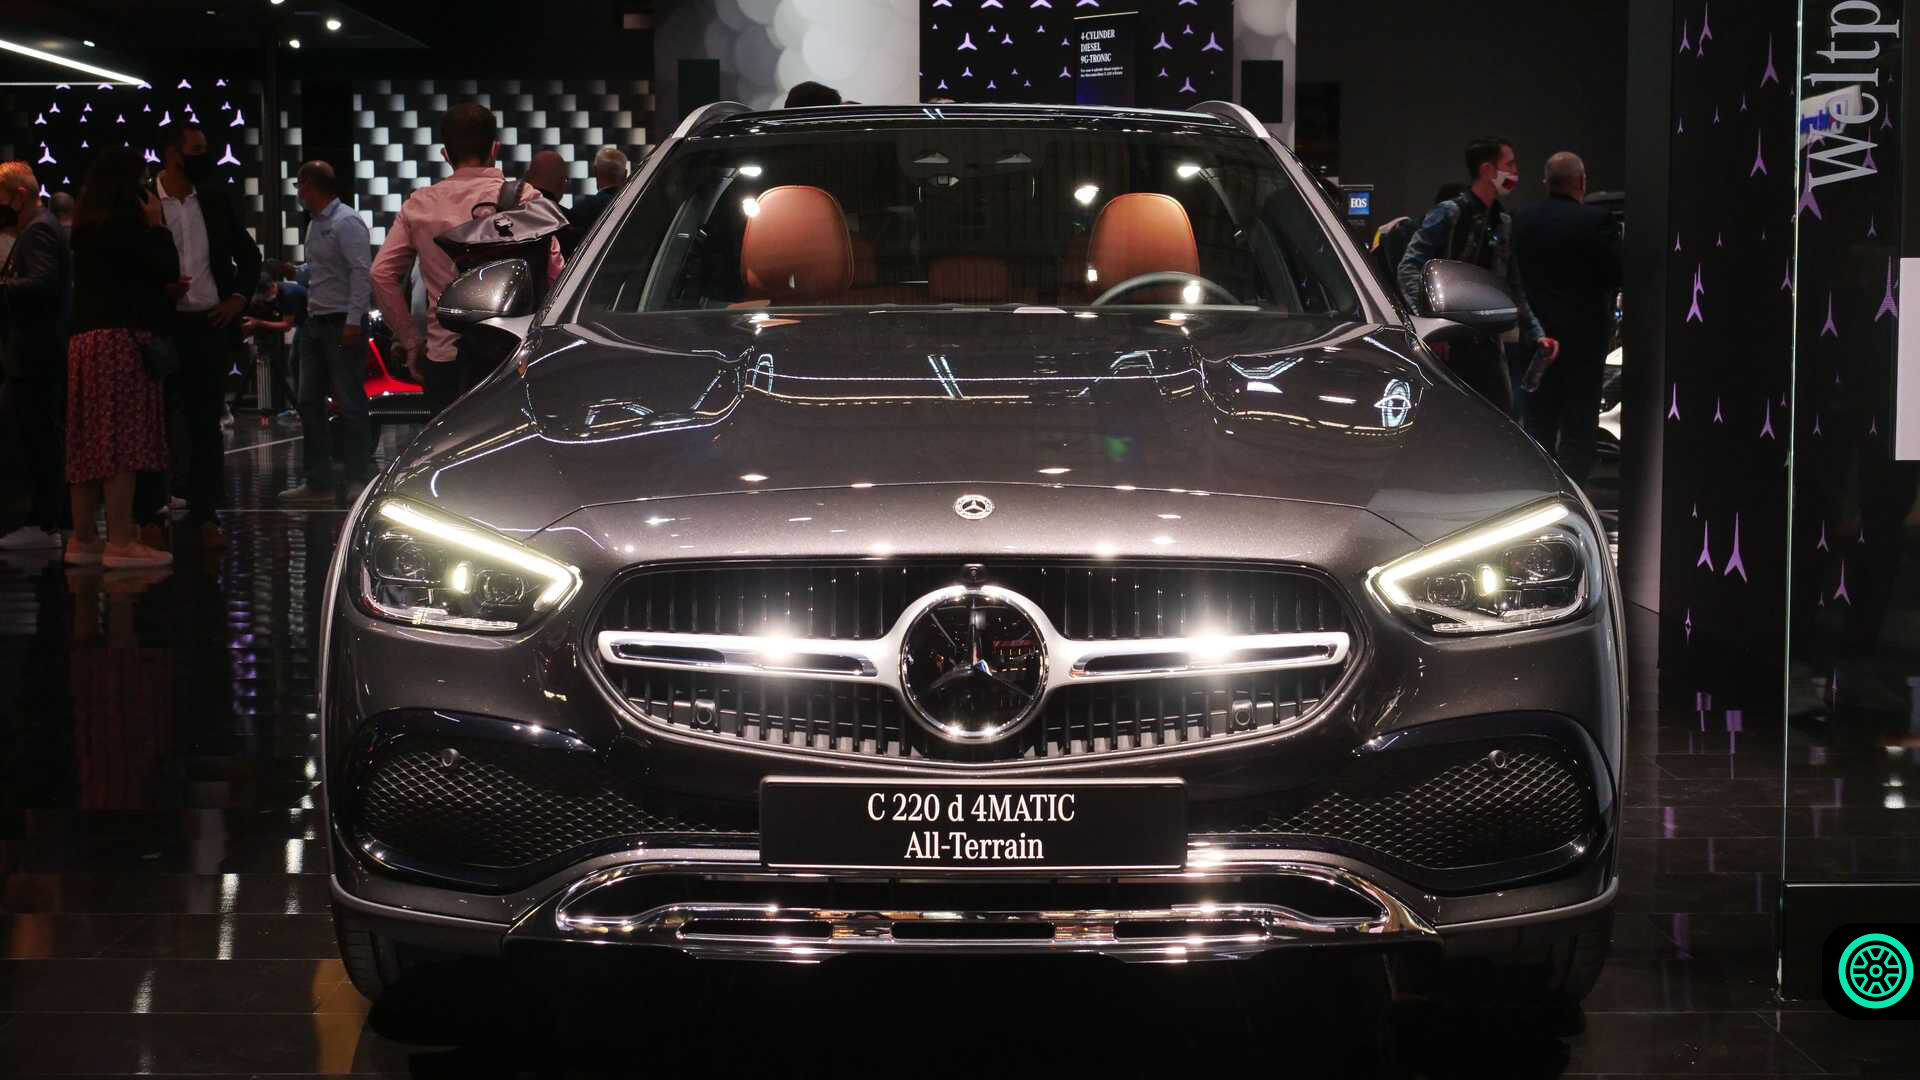 Yeni Mercedes-Benz C-Serisi All-Terrain modeli Münih Otomobil Fuarında gösterildi! 1